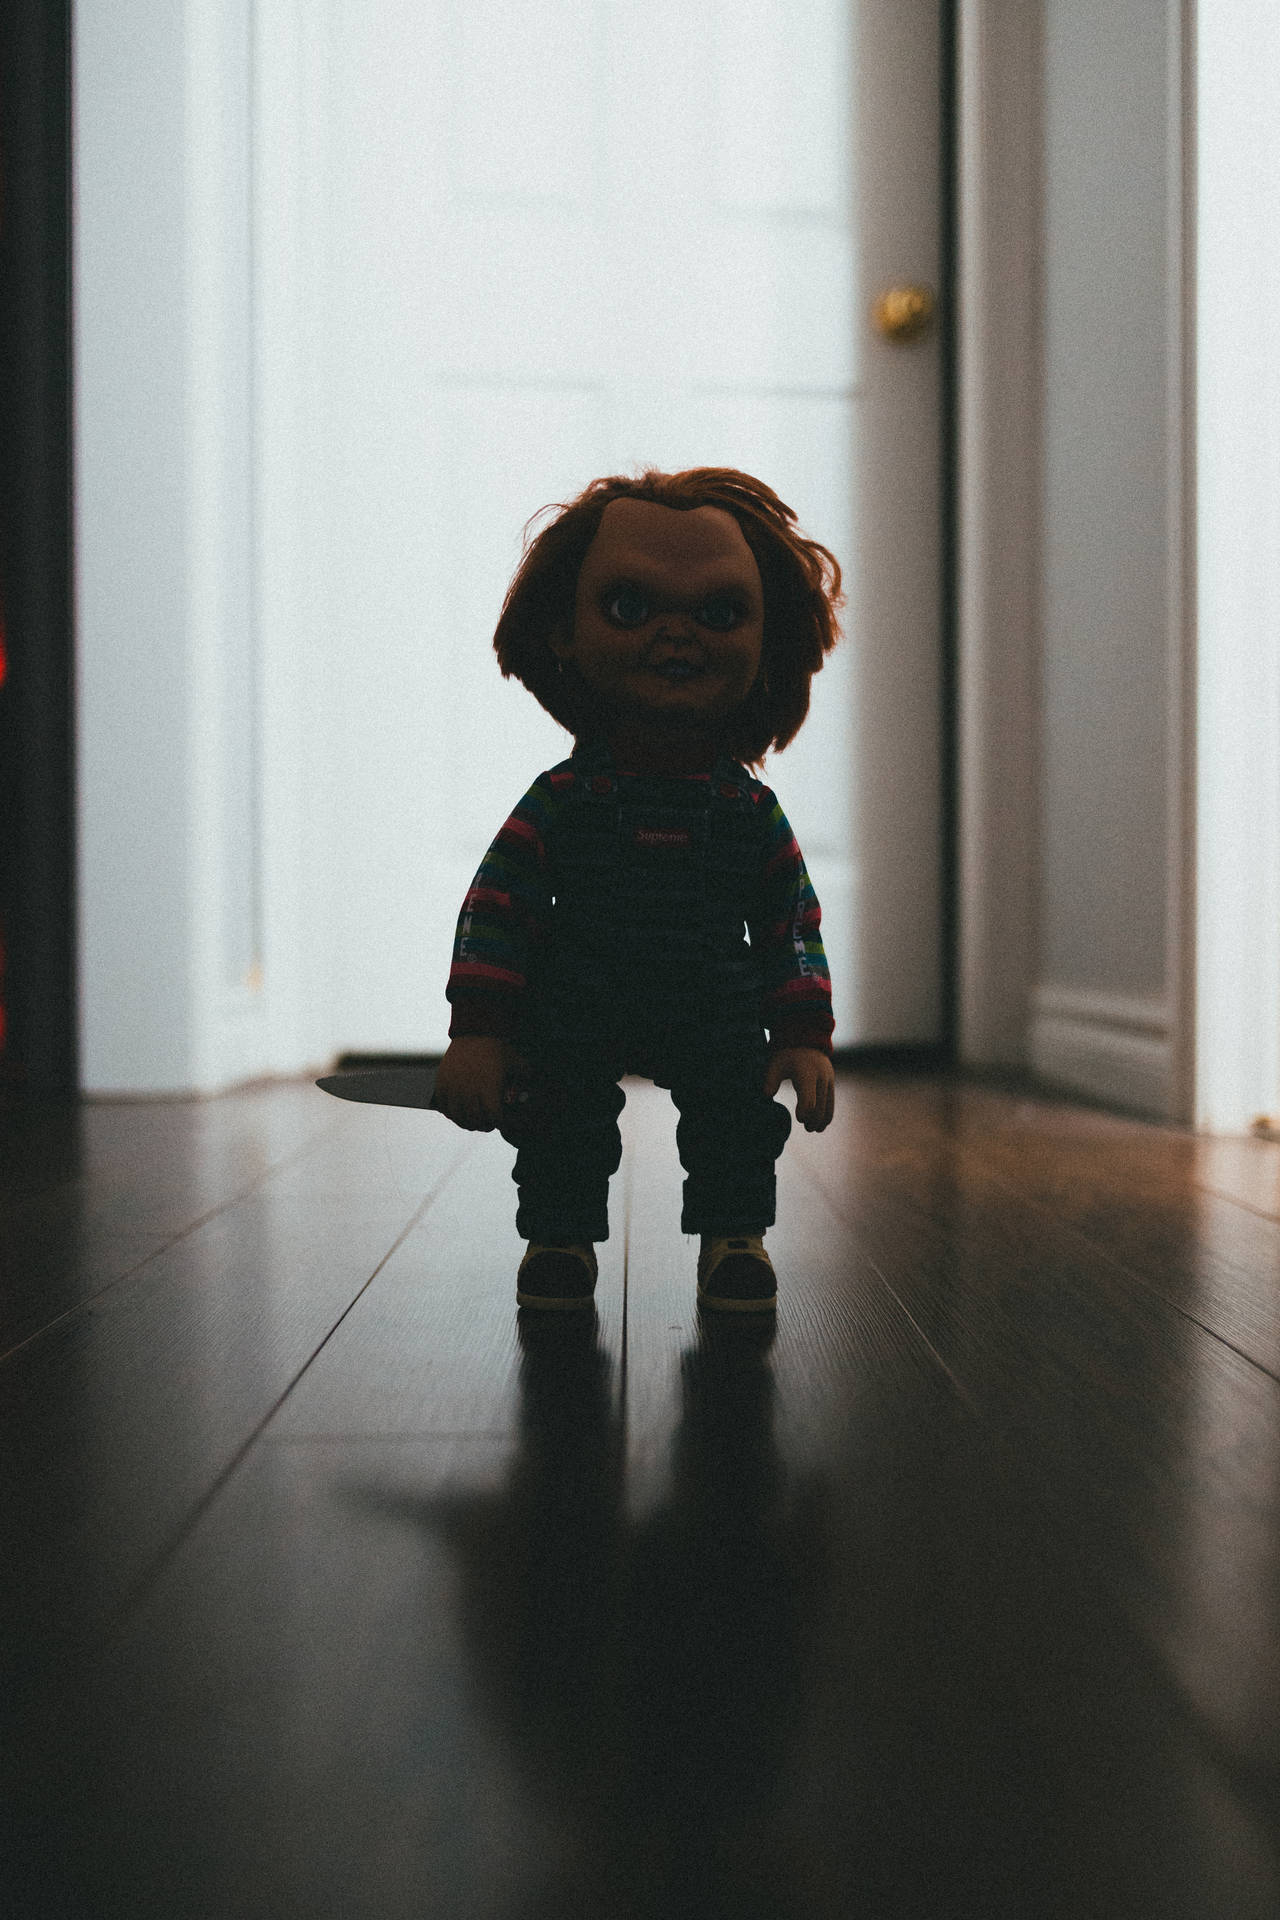 Creepy Chucky Doll